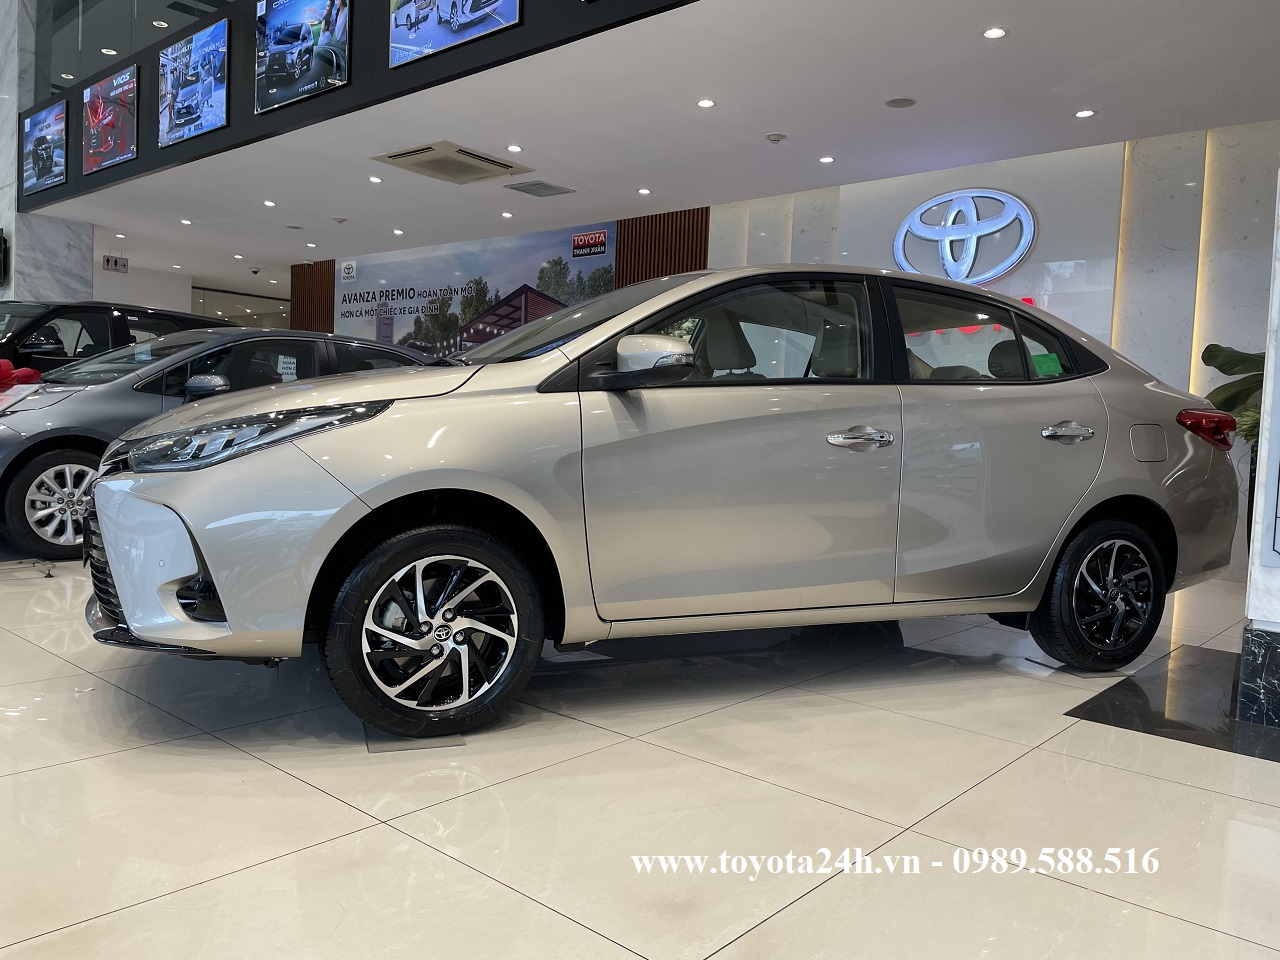 Toyota Vios 1.5G 2022 Màu Nâu Vàng Cát, Hình Ảnh Bảng Giá Xe Lăn Bánh ...